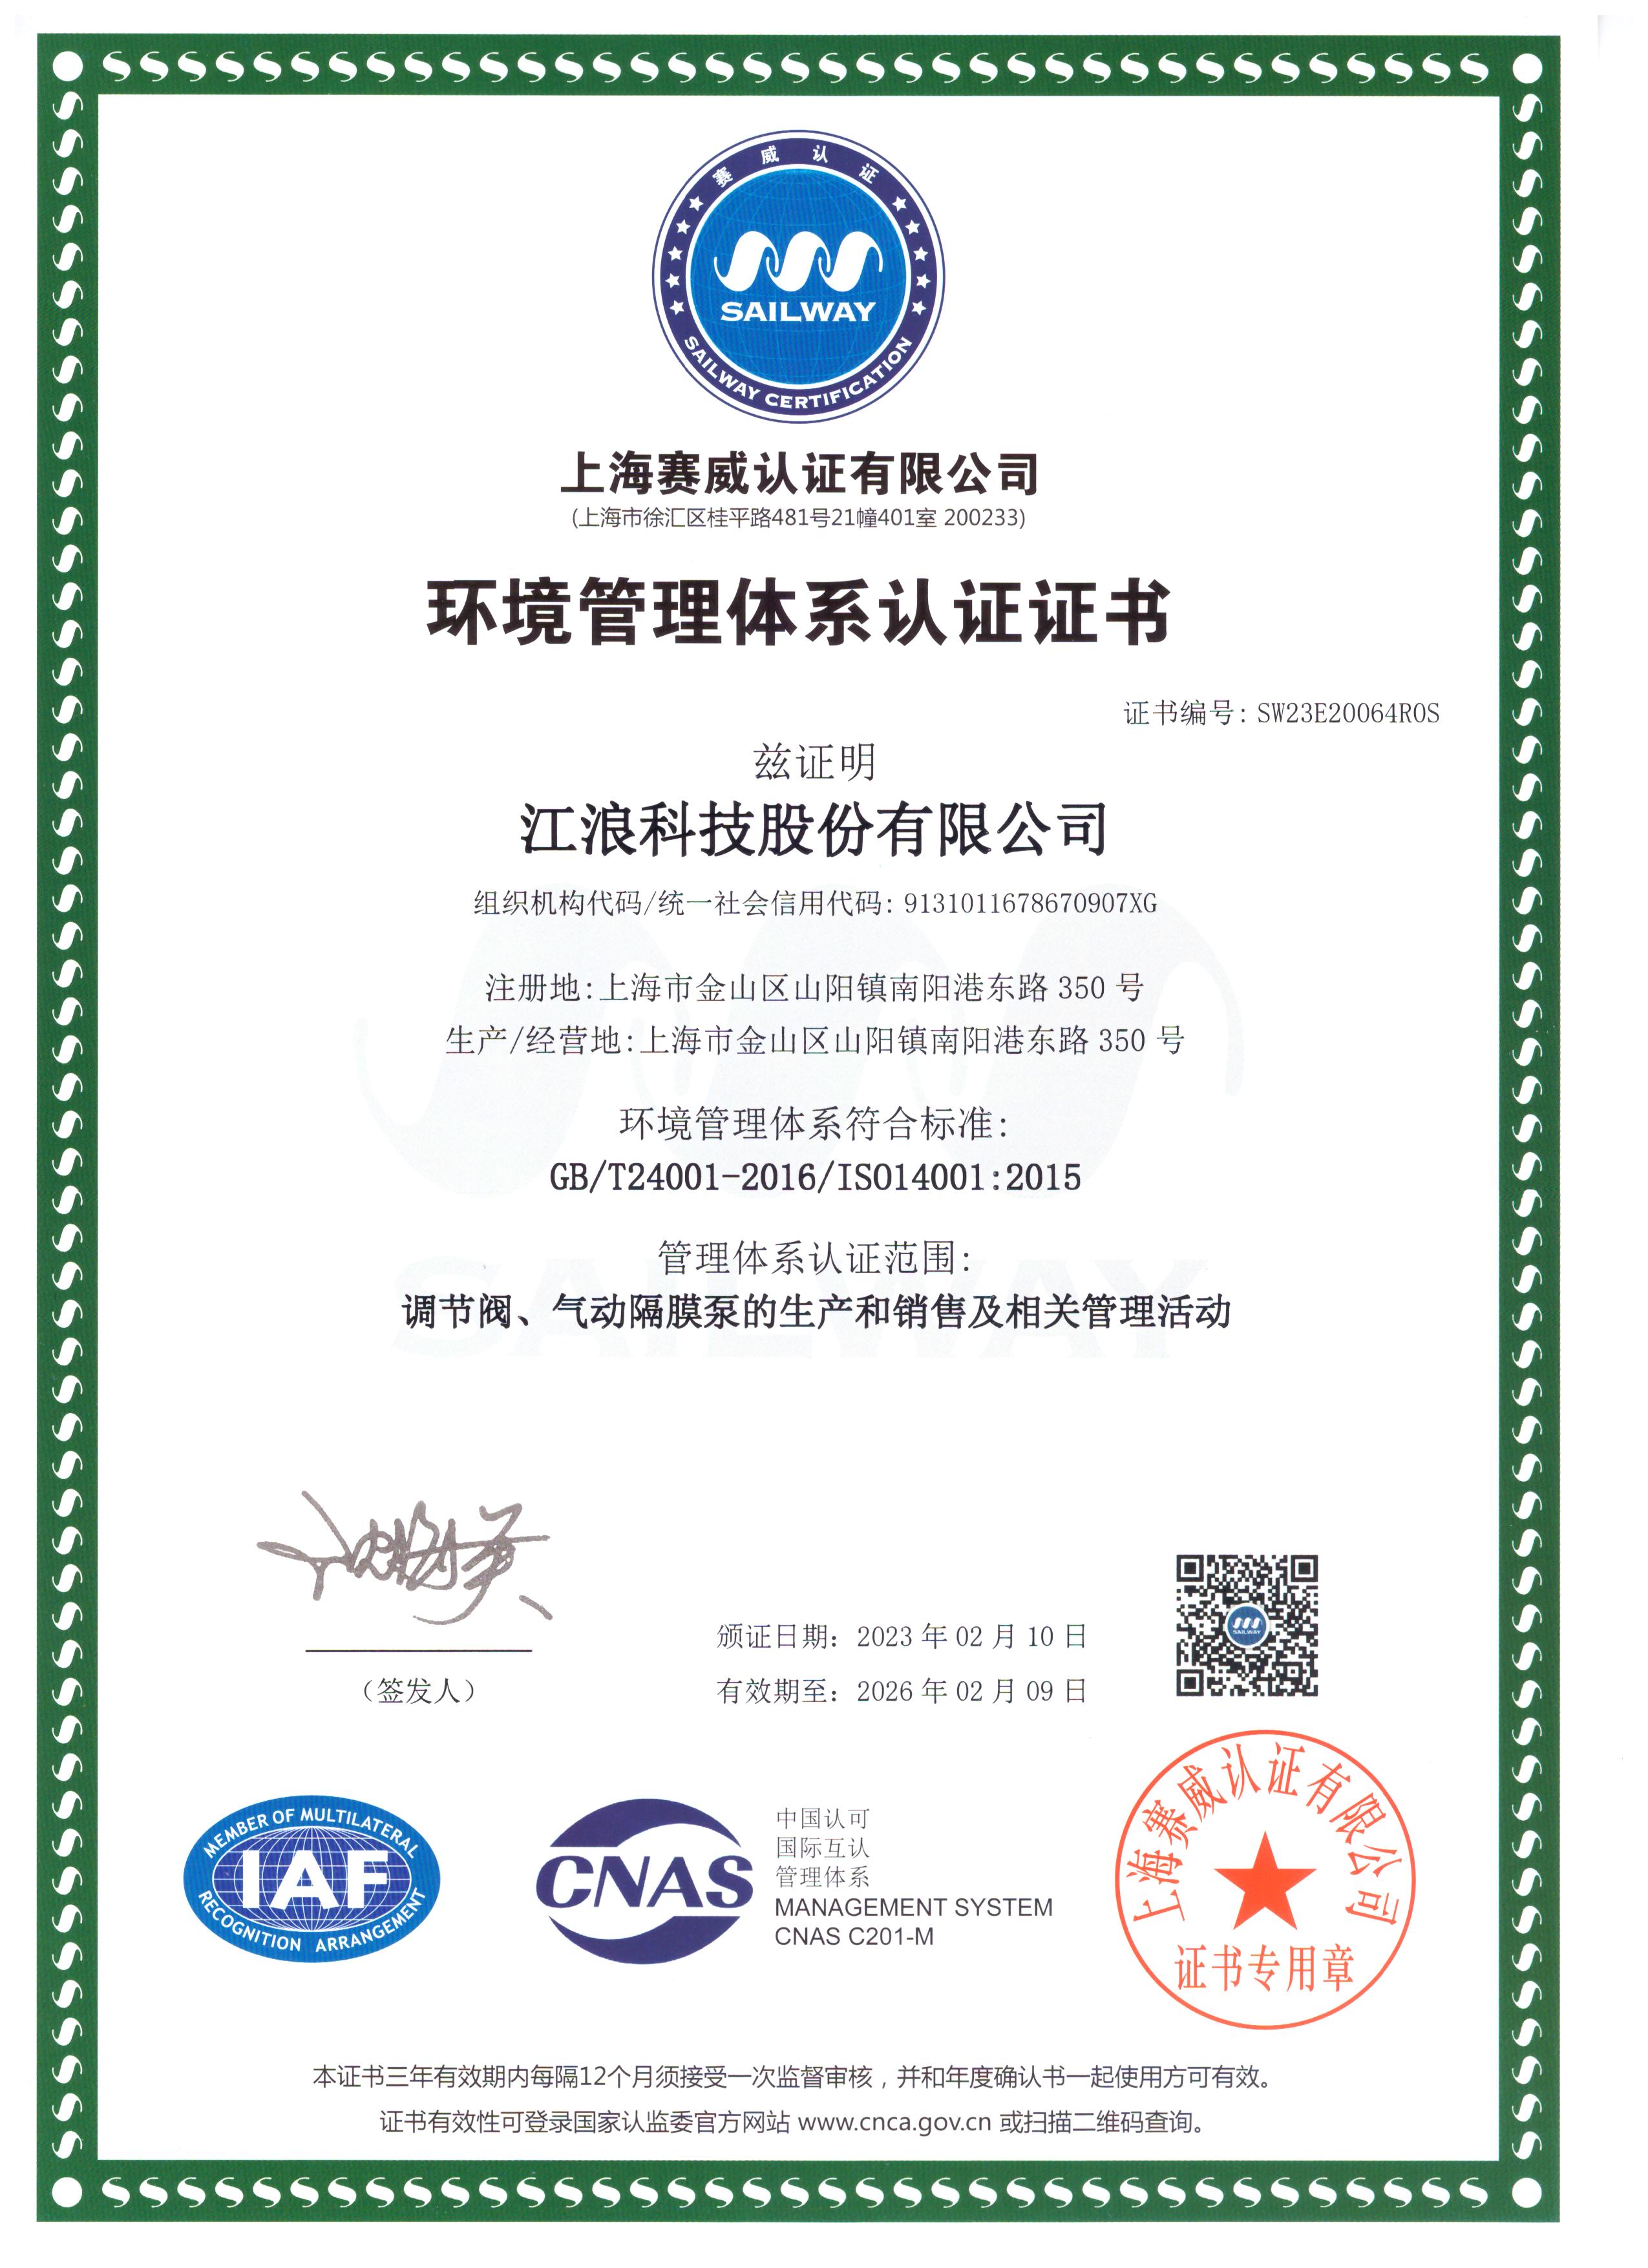 江浪科技 环境管理体系认证